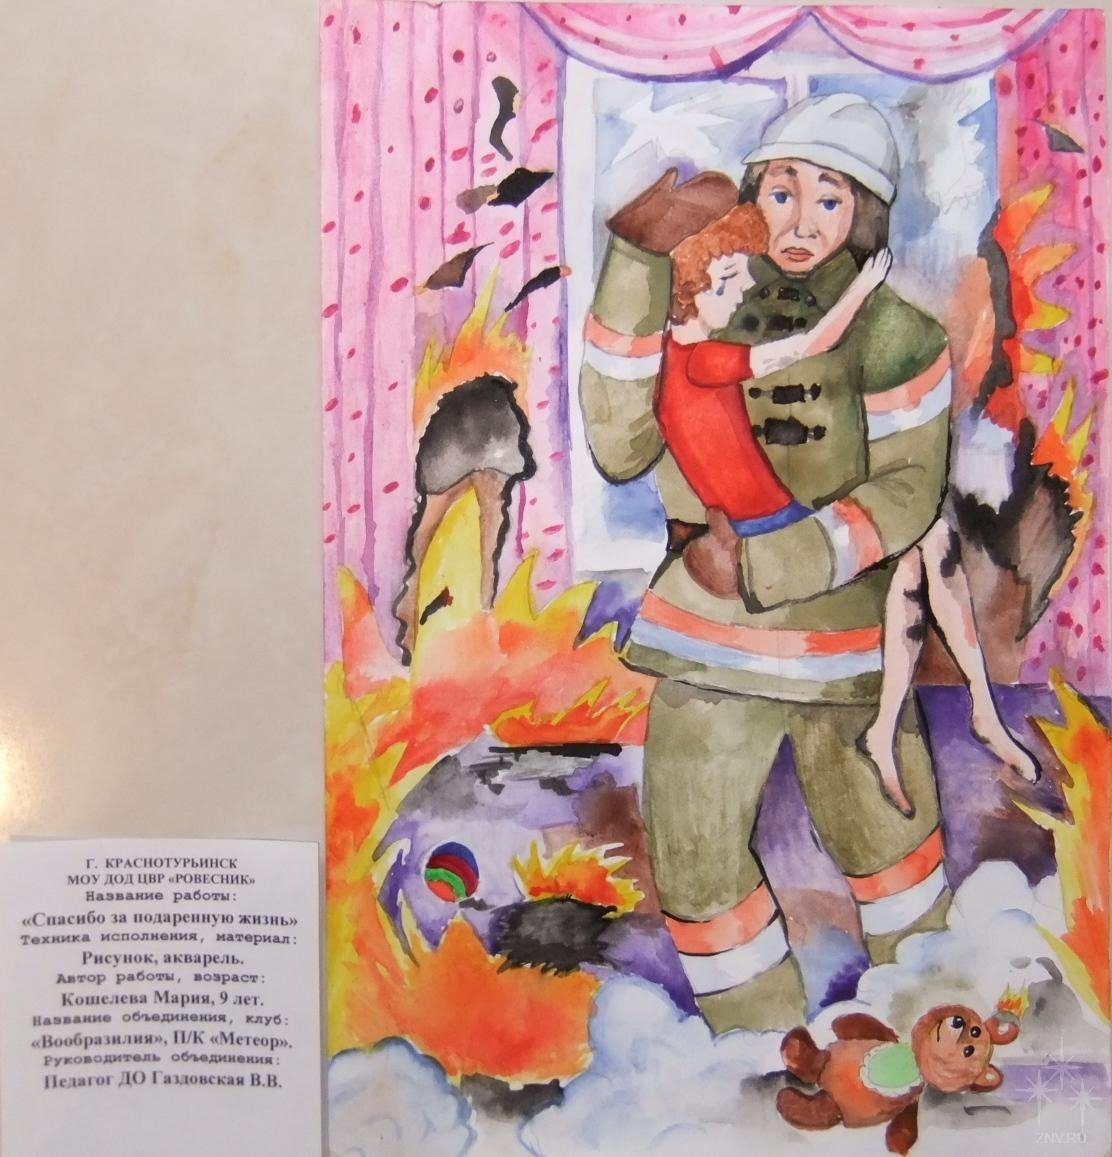 Пожарный профессия Героическая рисунок на конкурс